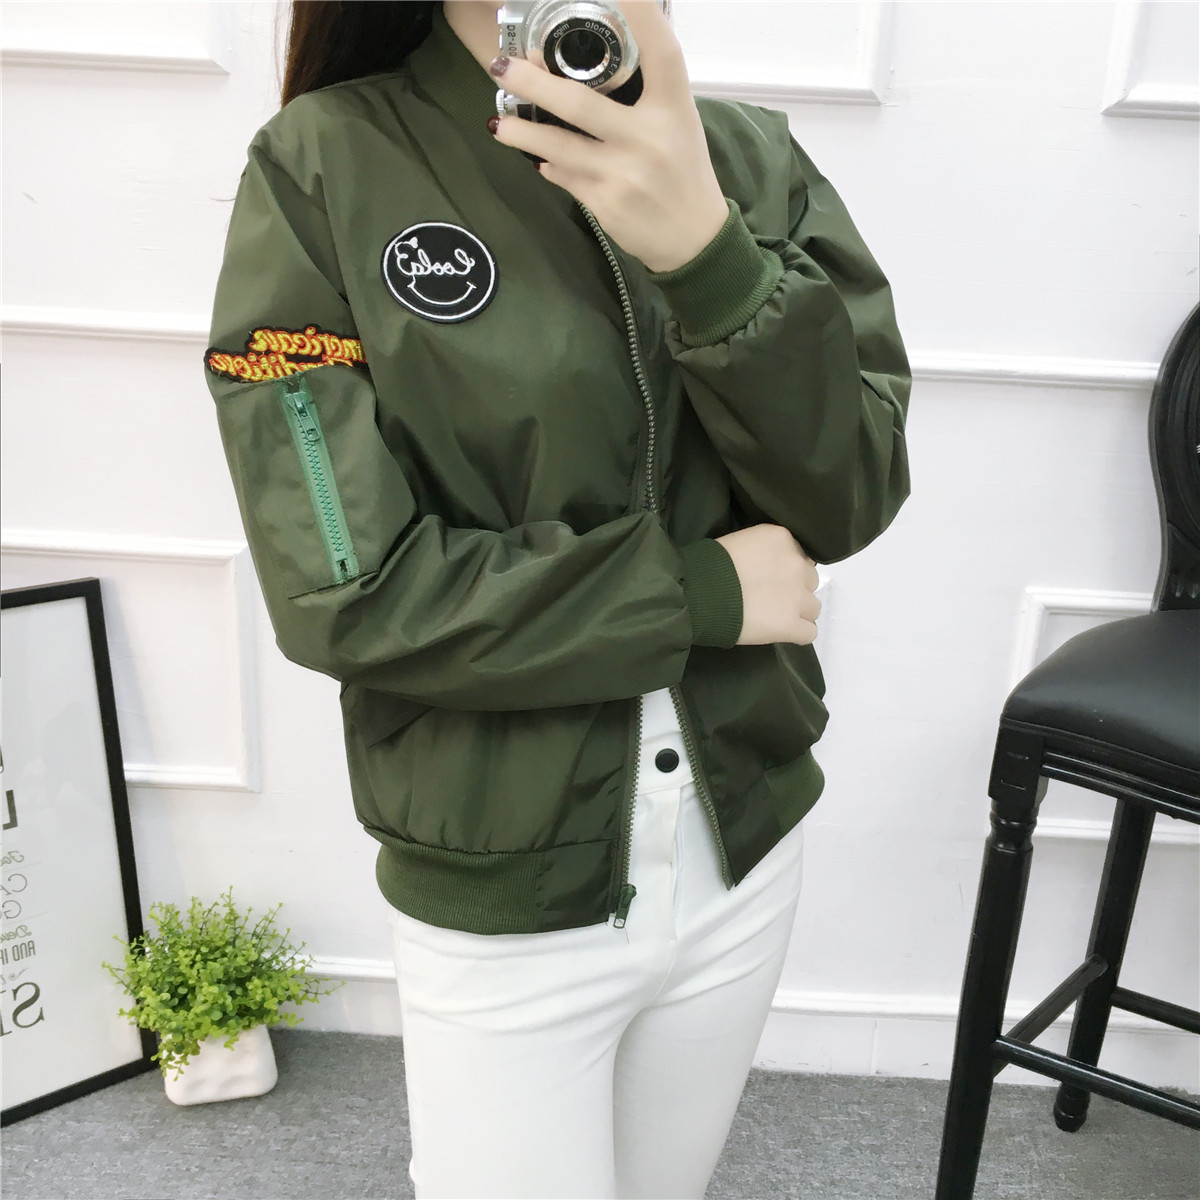 2017春裝新款軍綠色小外套韓版女式短款棒球服飛行員學生夾克衫